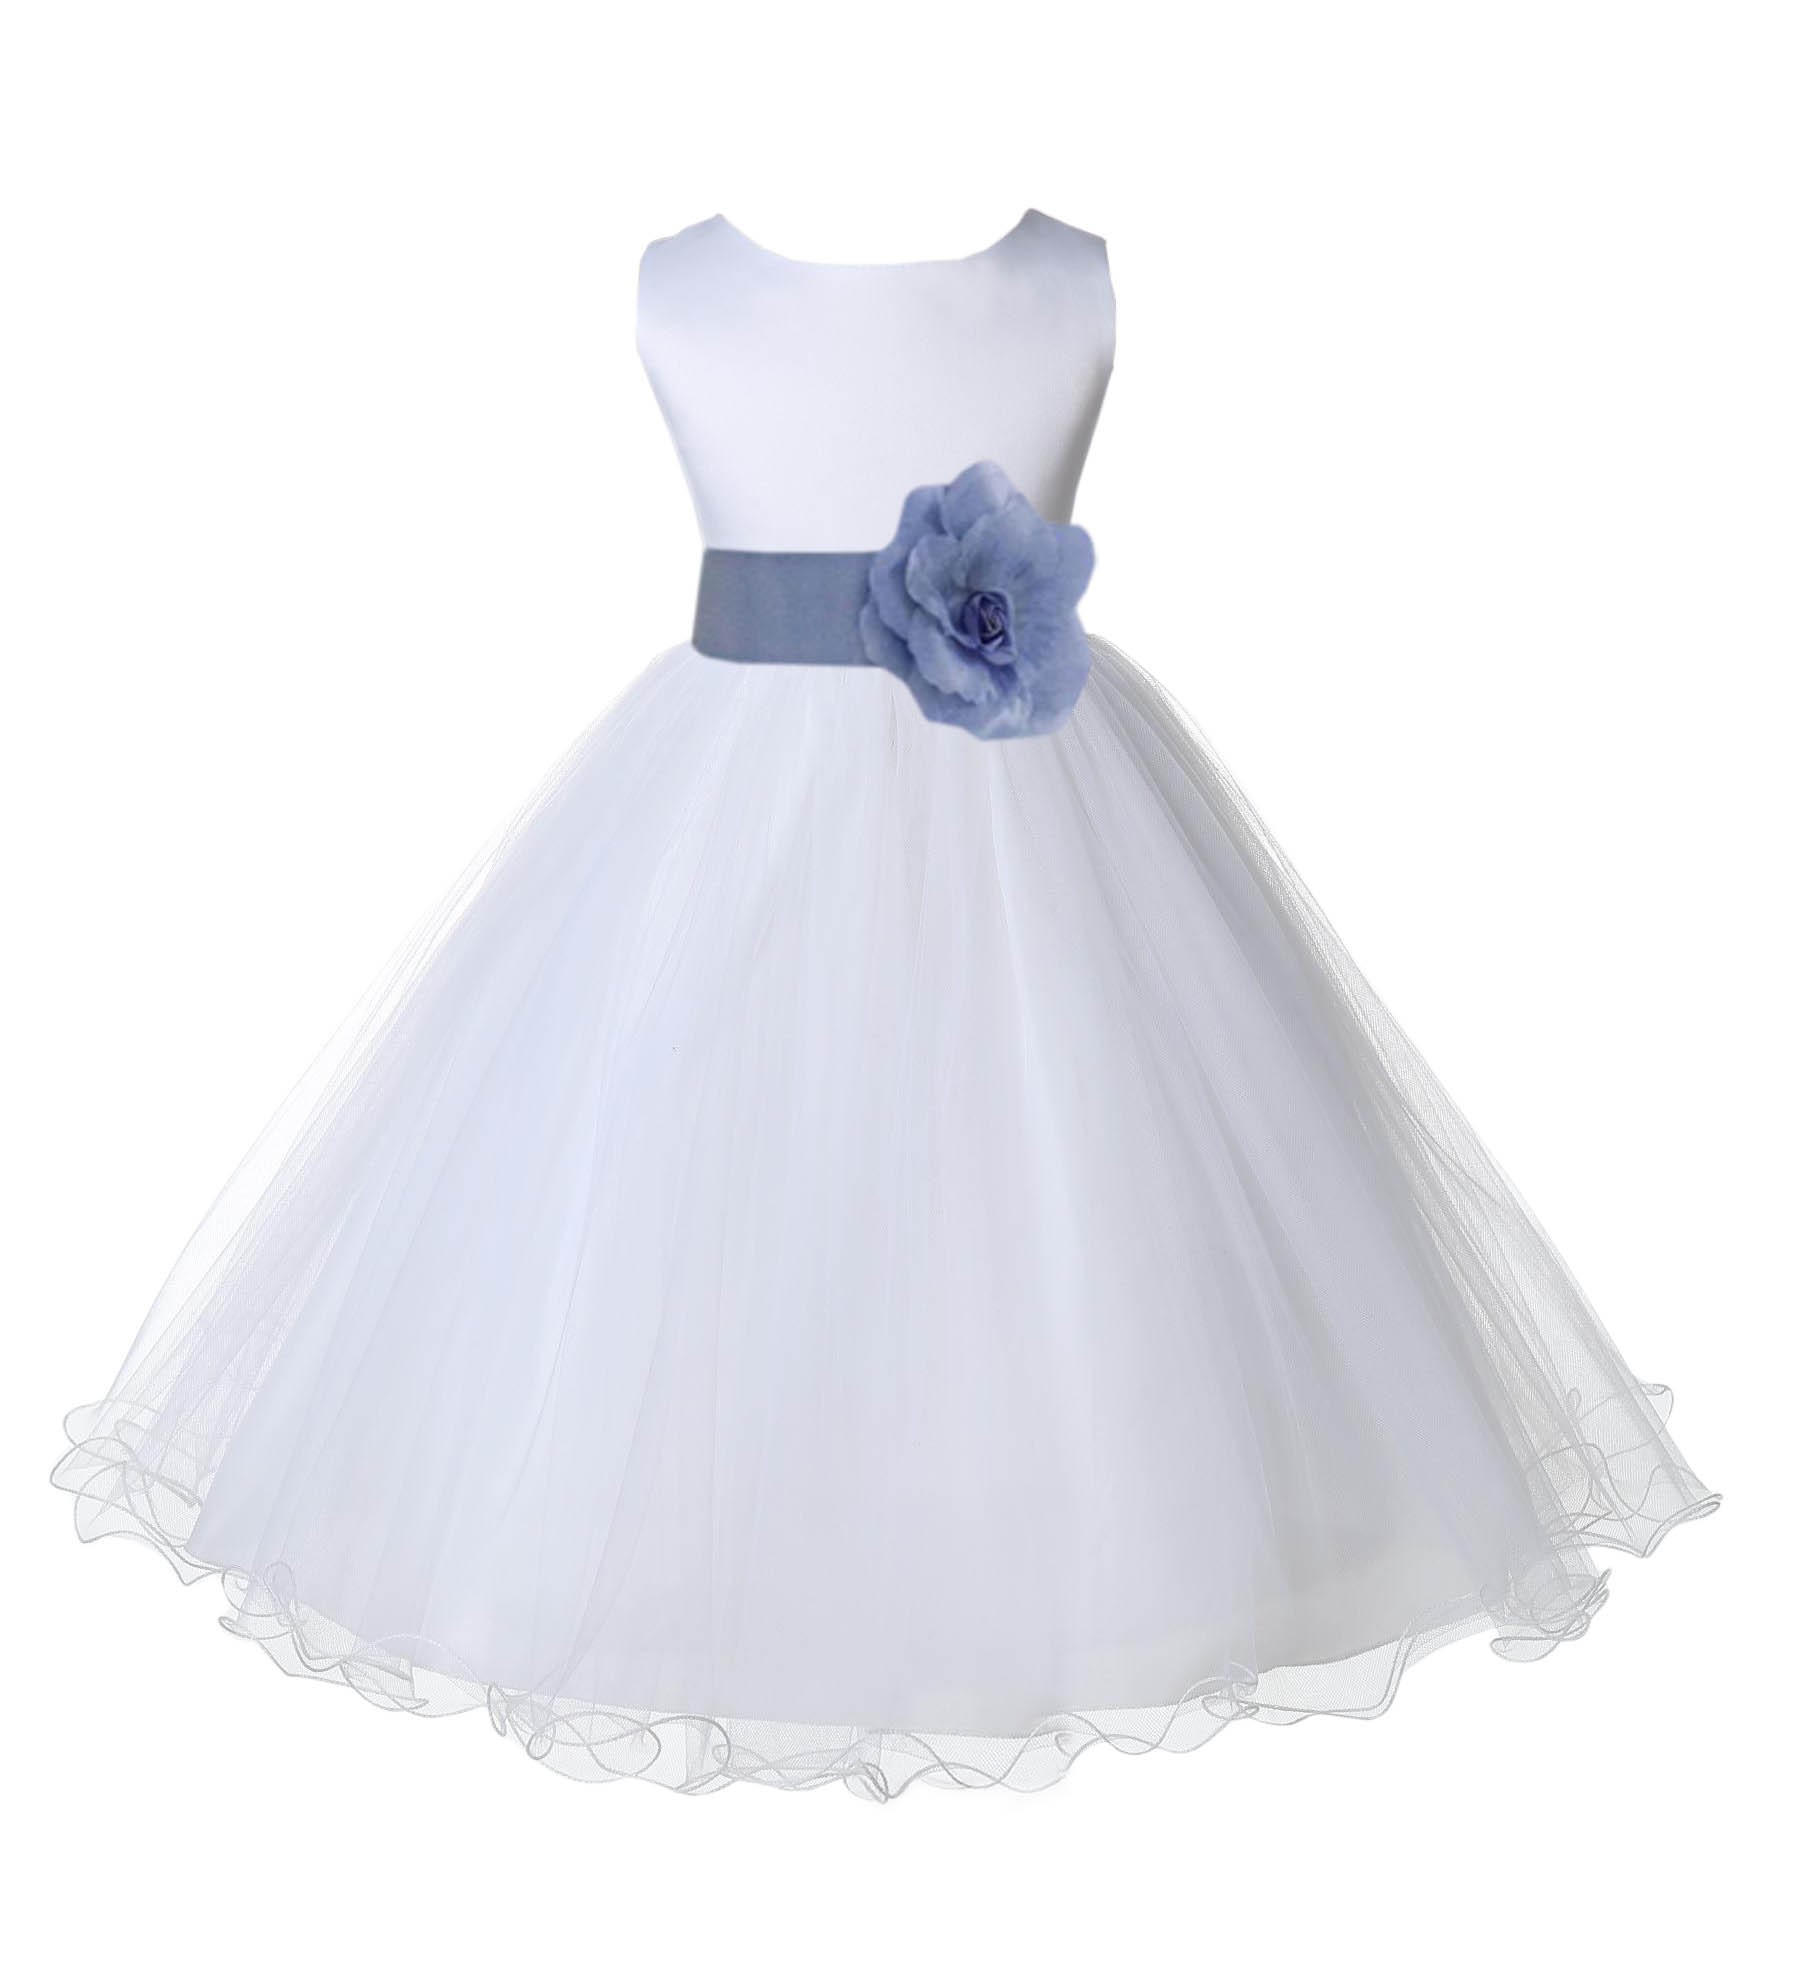 White/Bluebird Tulle Rattail Edge Flower Girl Dress Wedding Bridal 829S